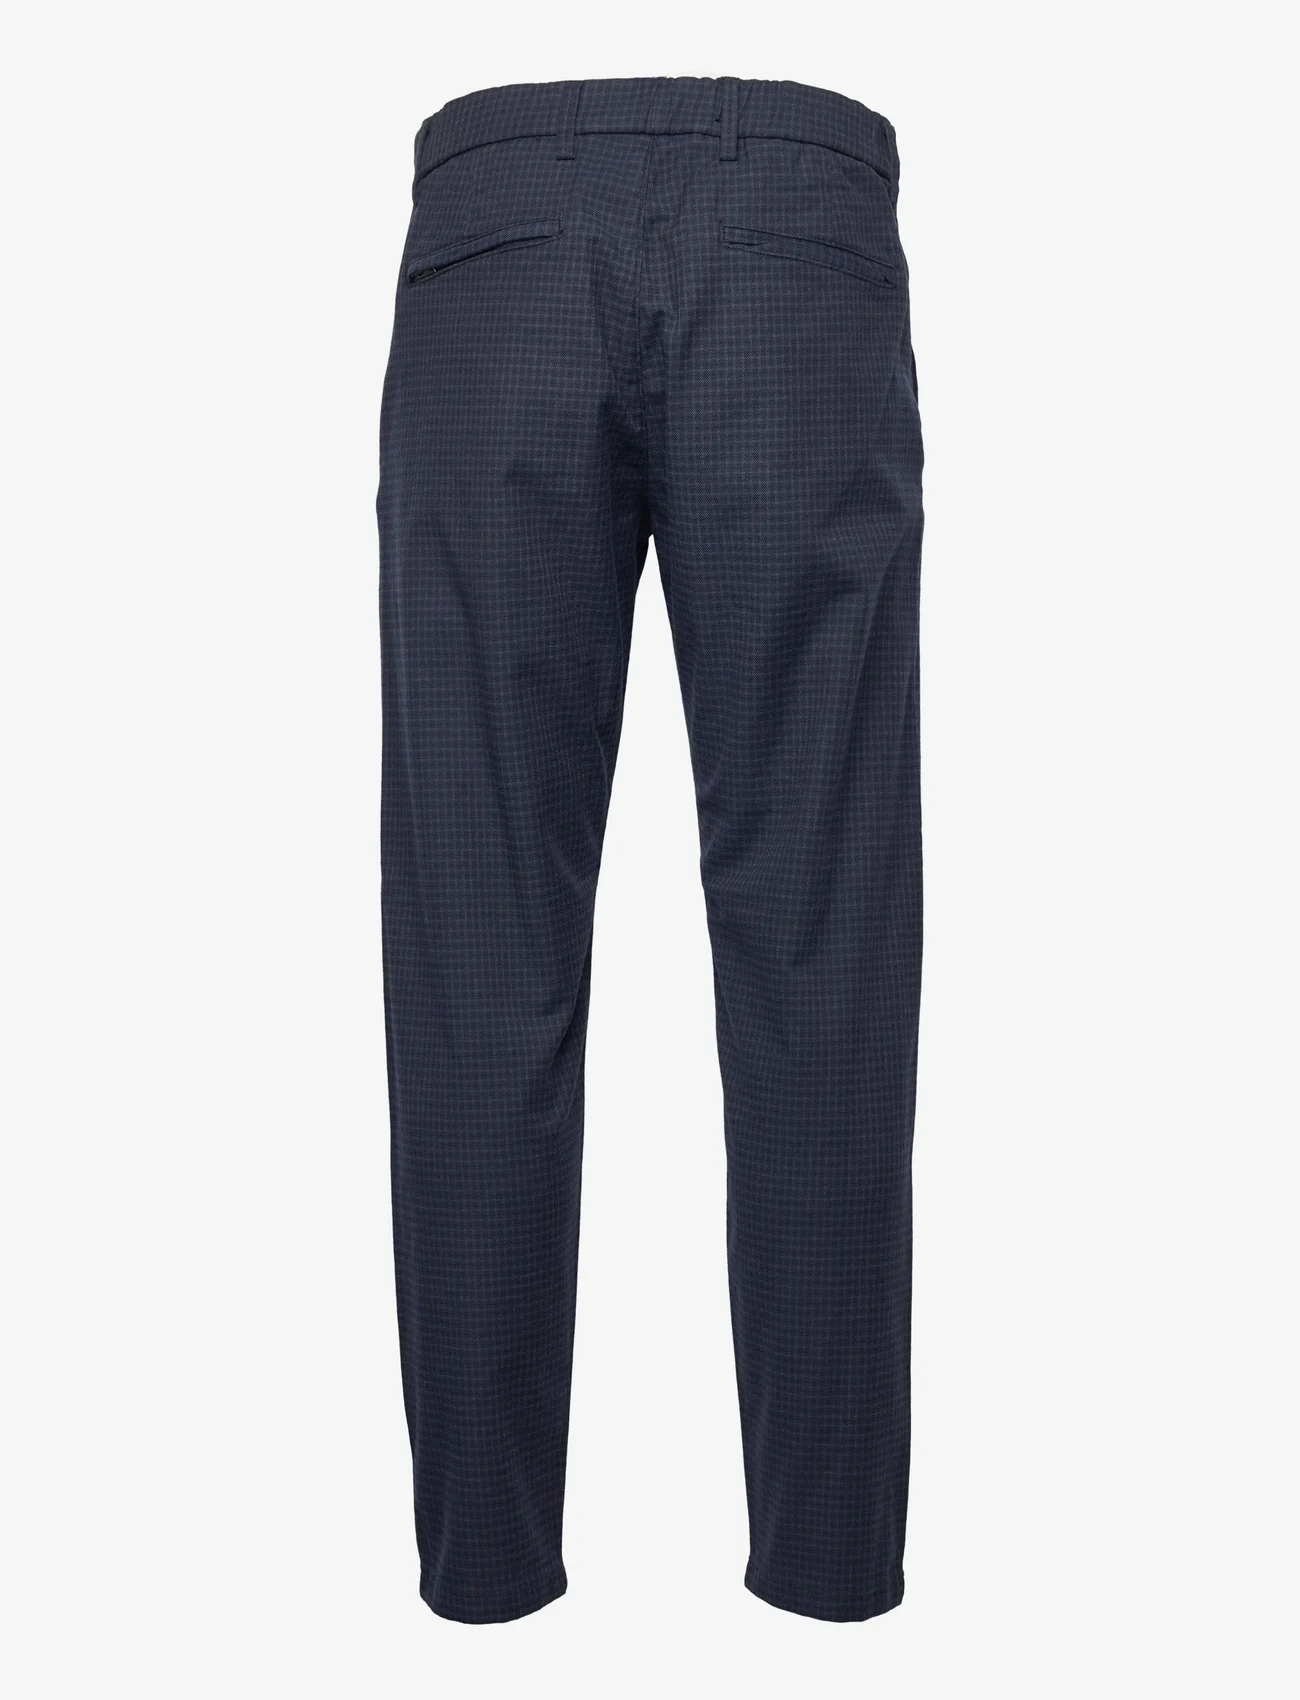 Selected Homme - SLHSLIMTAPERED-YORK PANTS - spodnie na co dzień - navy blazer - 1